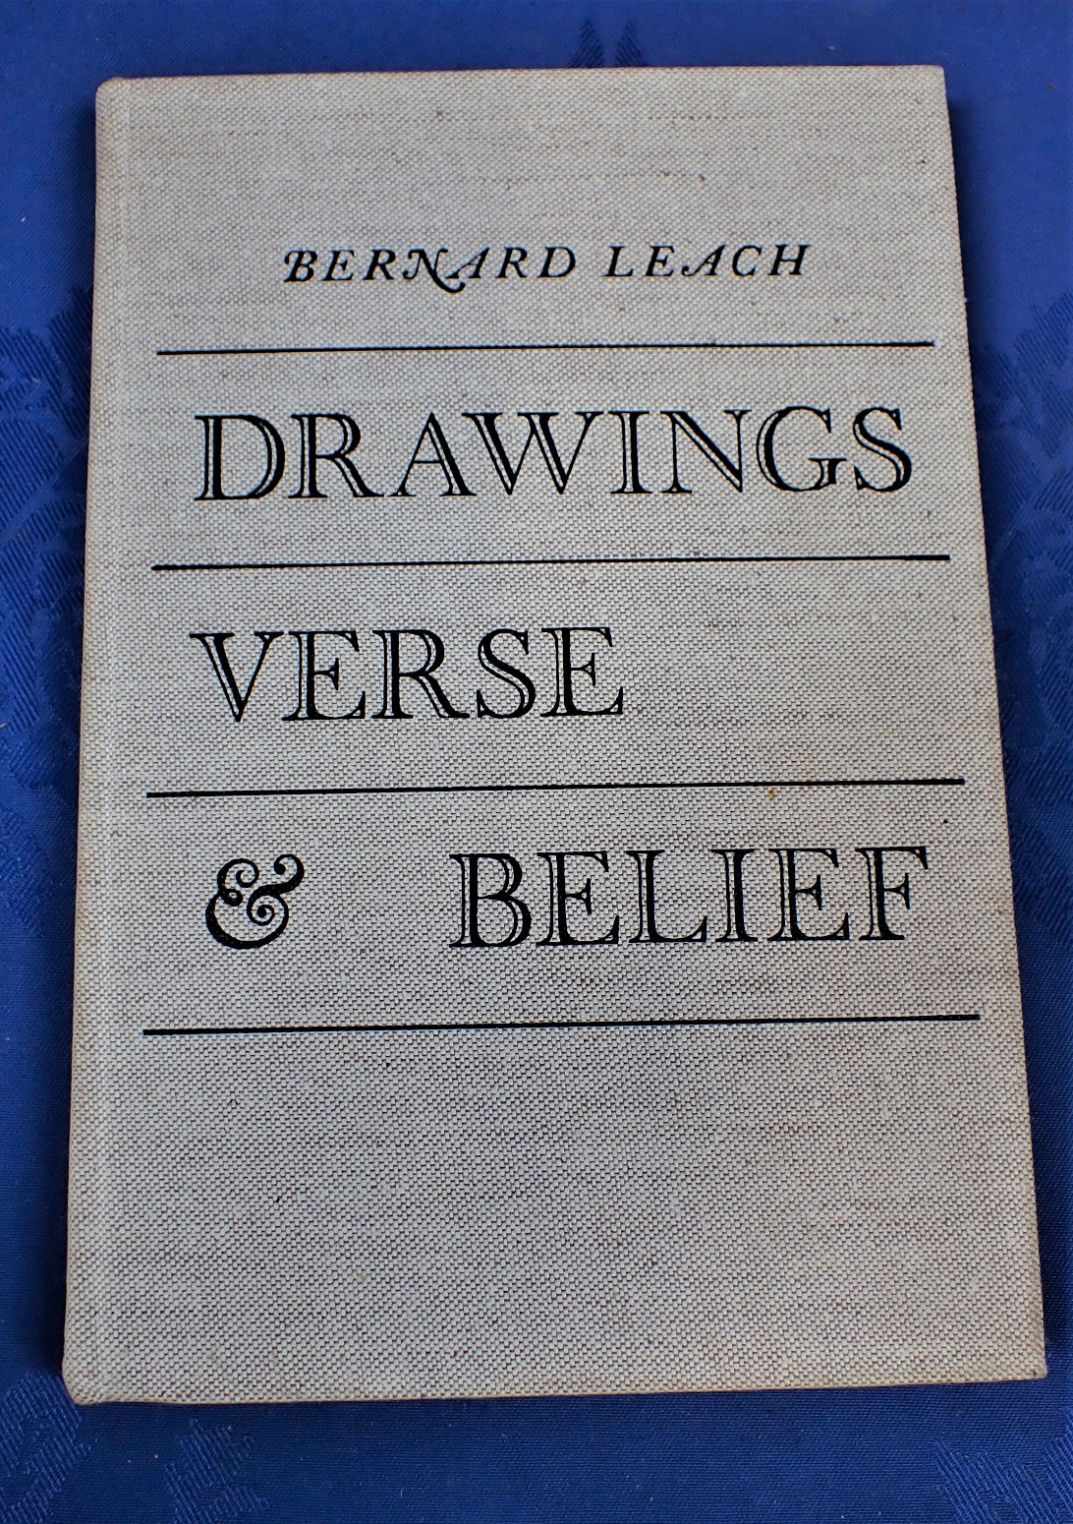 BERNARD LEACH 'DRAWINGS, VERSE AND BELIEF'